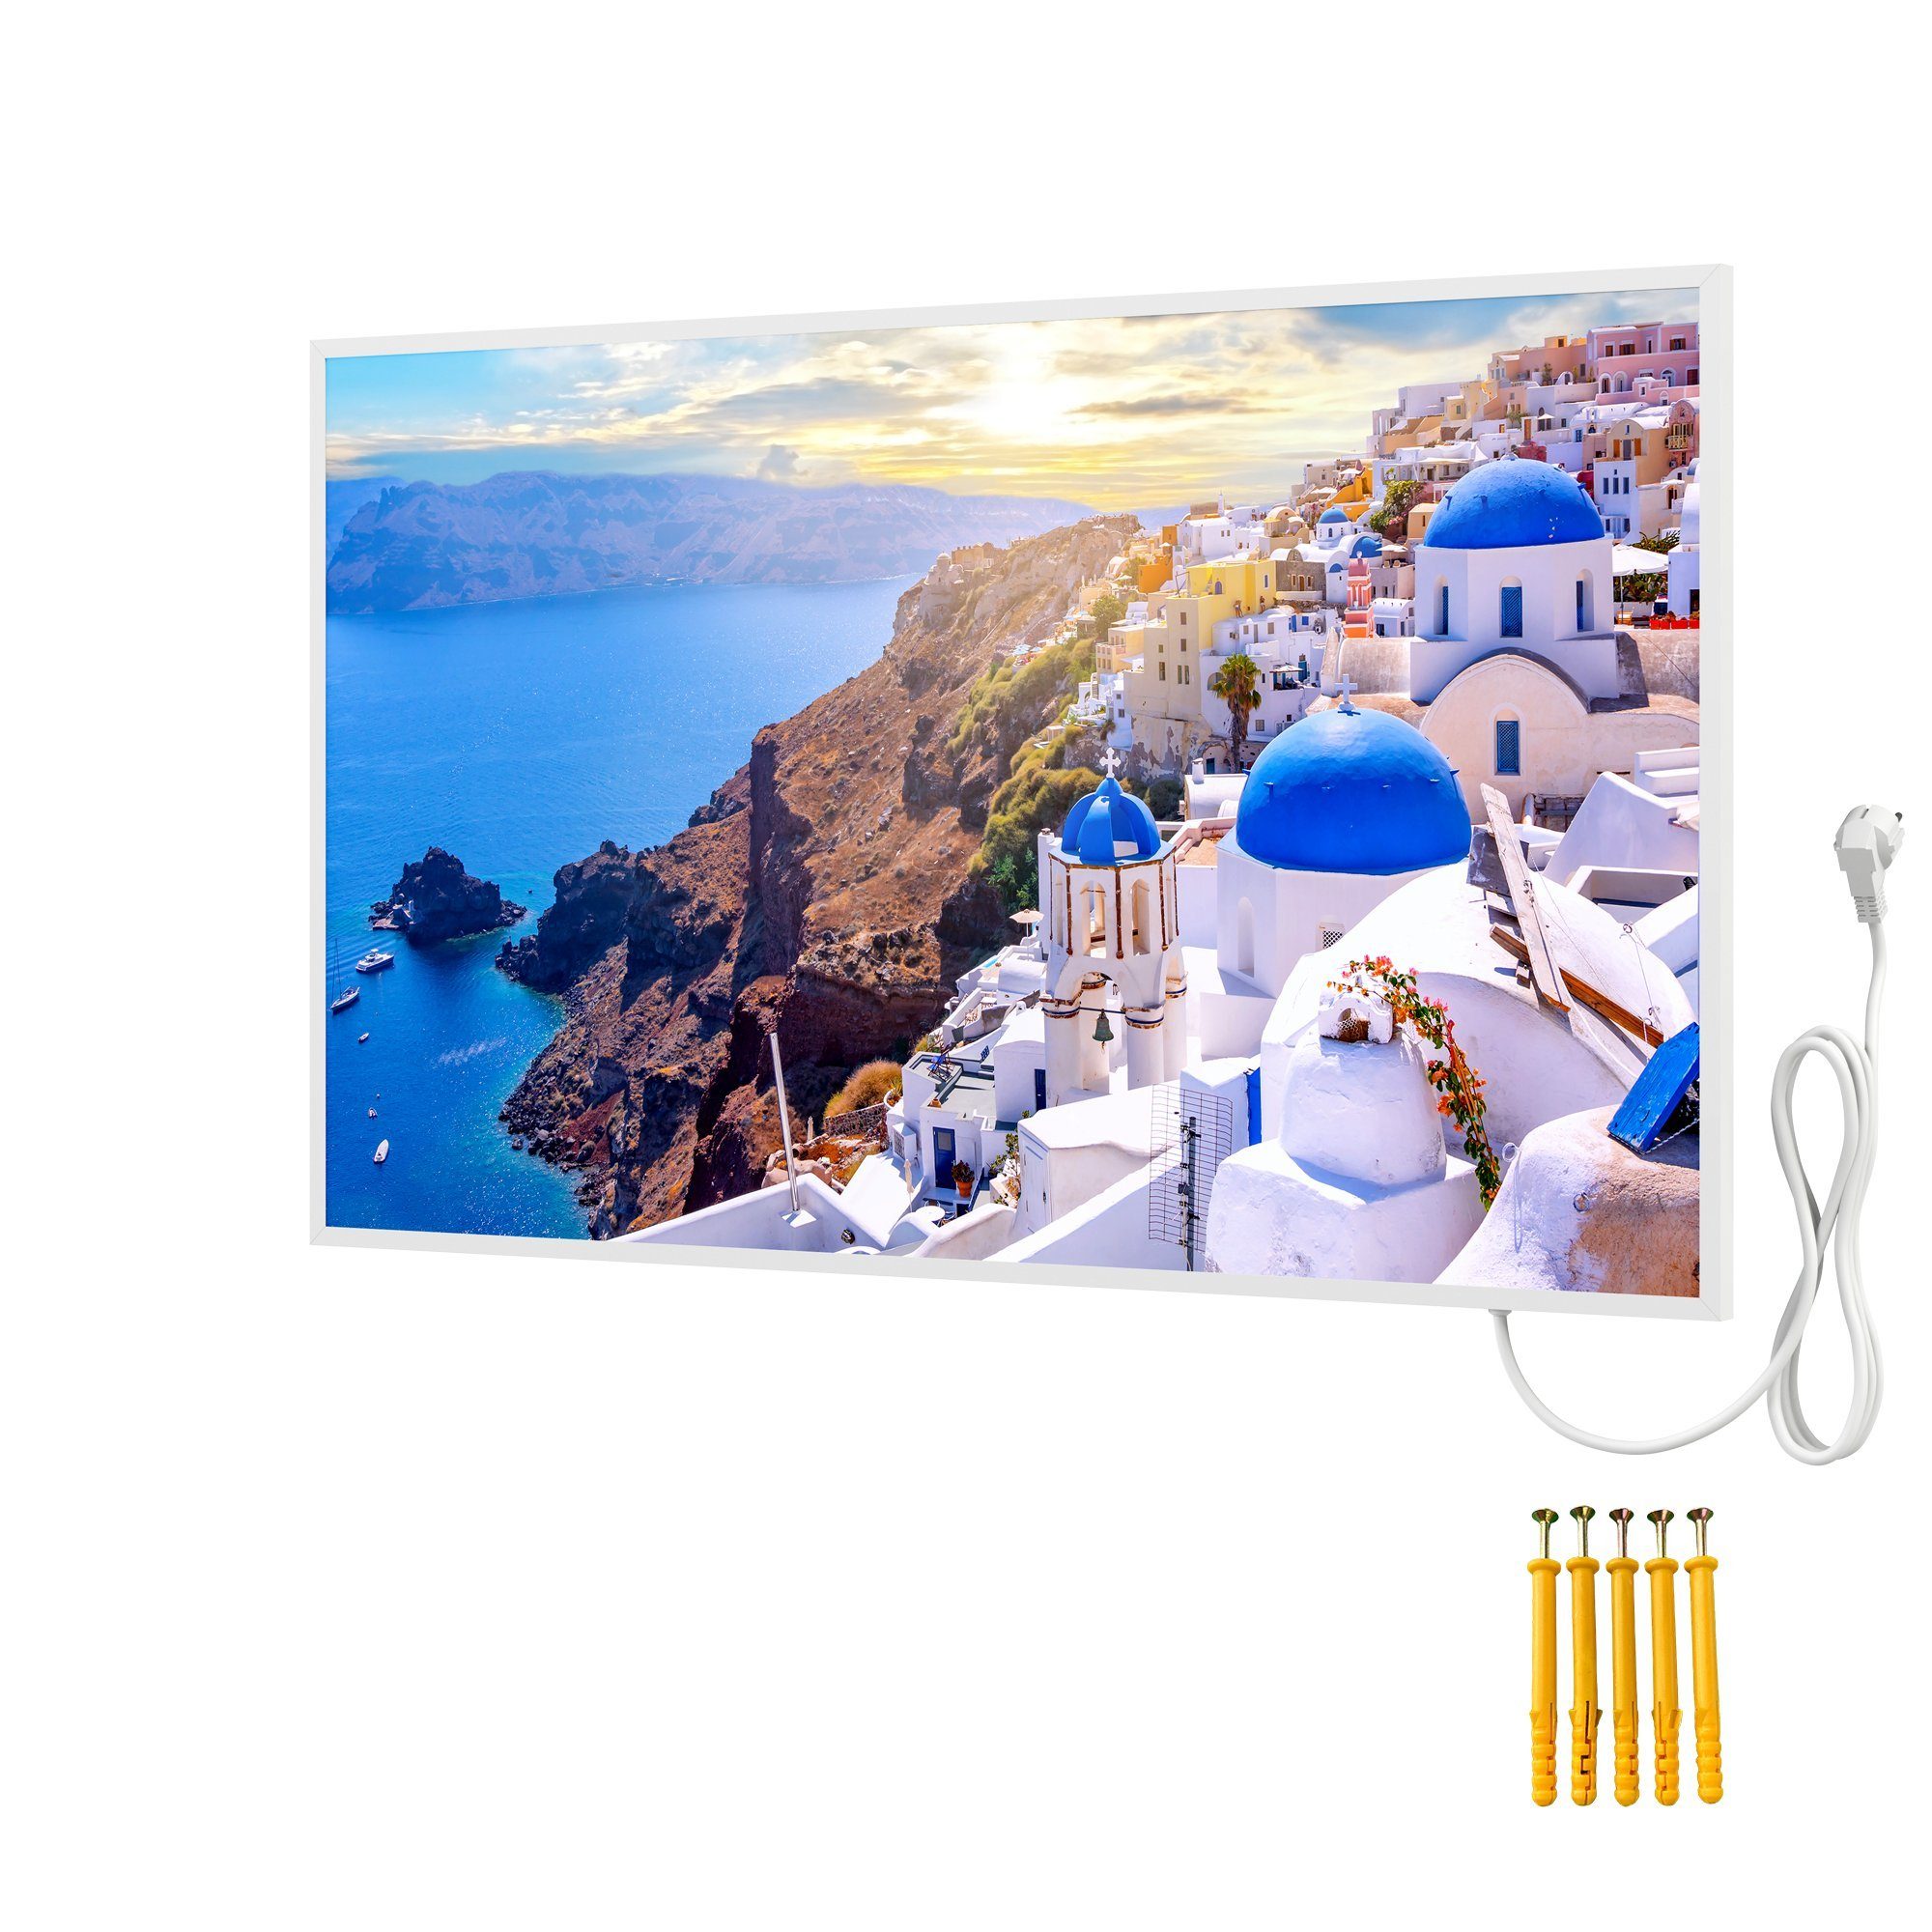 Bringer Infrarotheizung Bildheizung, Bild Infrarotheizung mit Rahmen, Motiv: Santorini, Griechenland